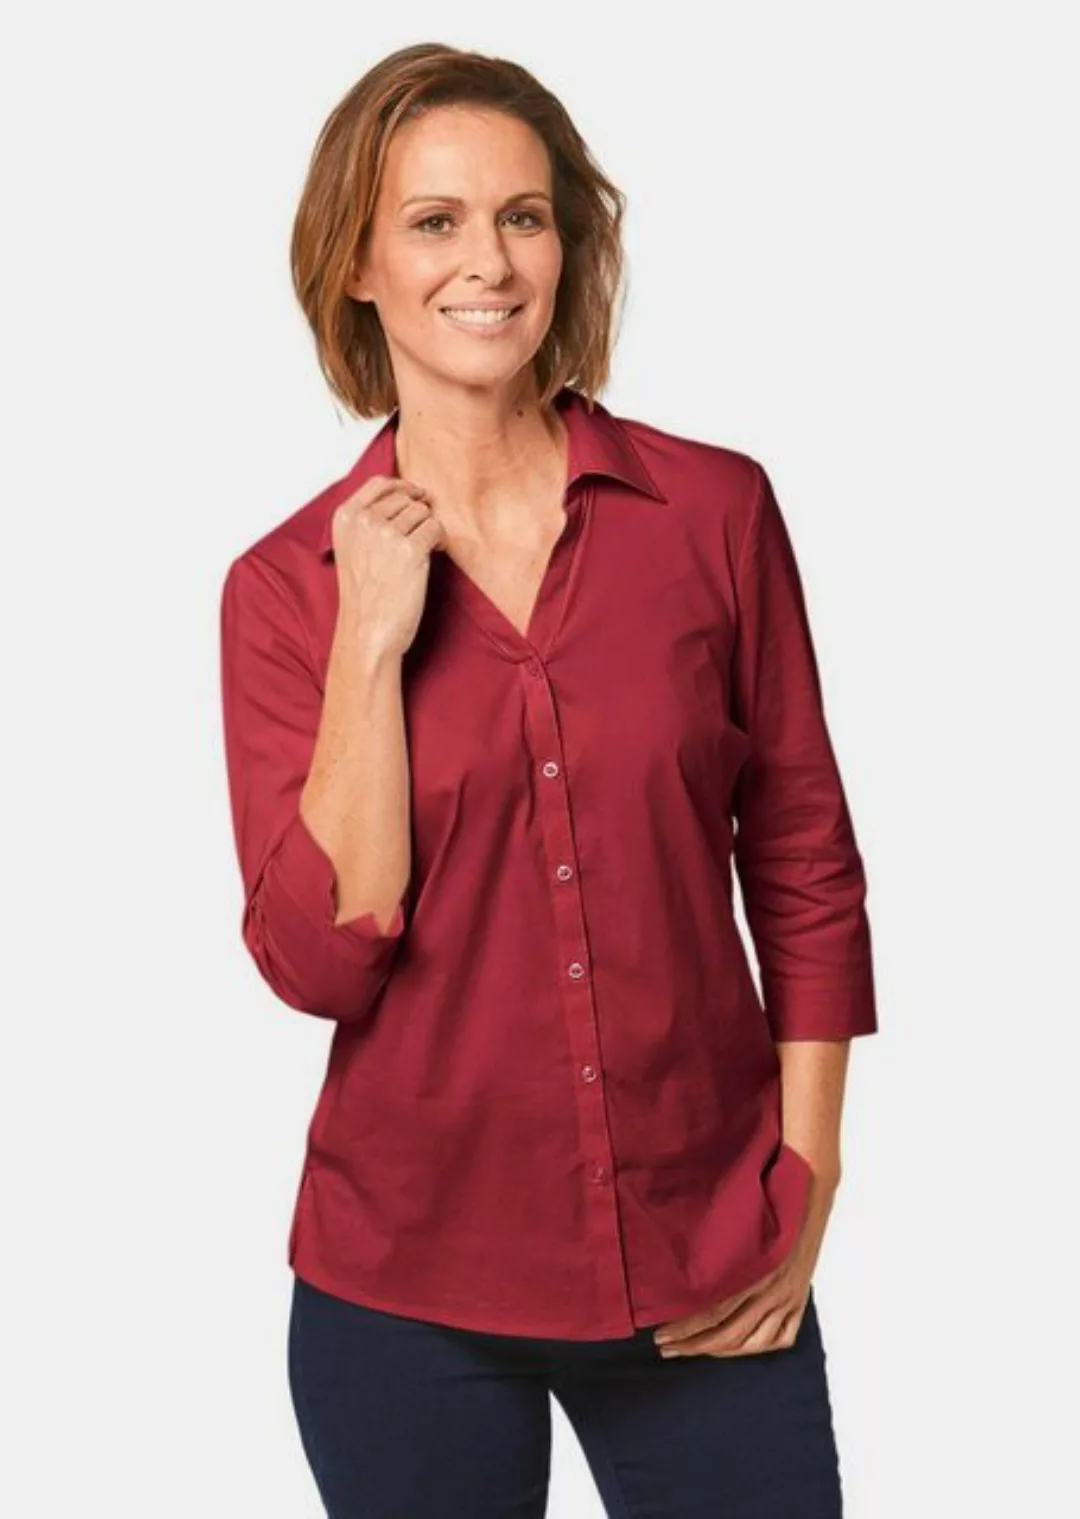 GOLDNER Hemdbluse Kurzgröße: Stretchbequeme Bluse mit Baumwolle günstig online kaufen